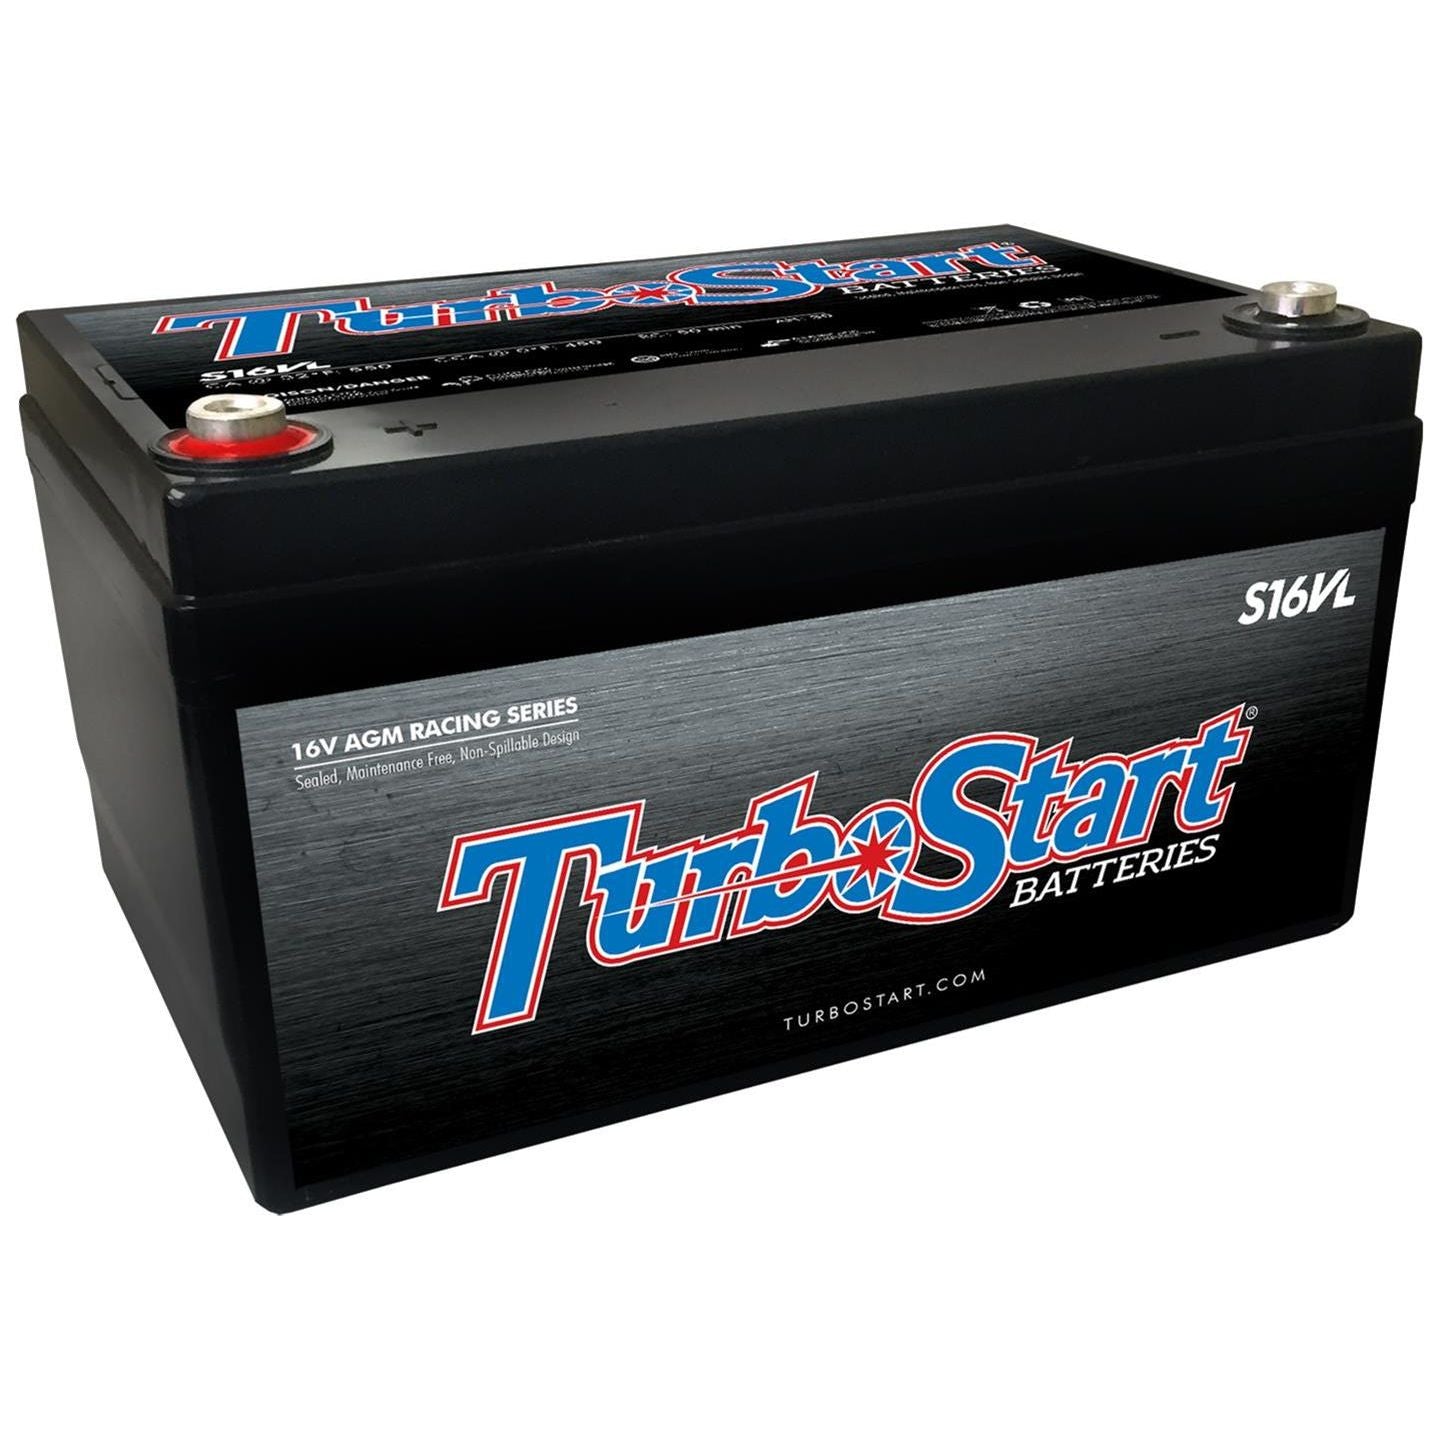 TurboStart 16 V Racing Batteries S16VL